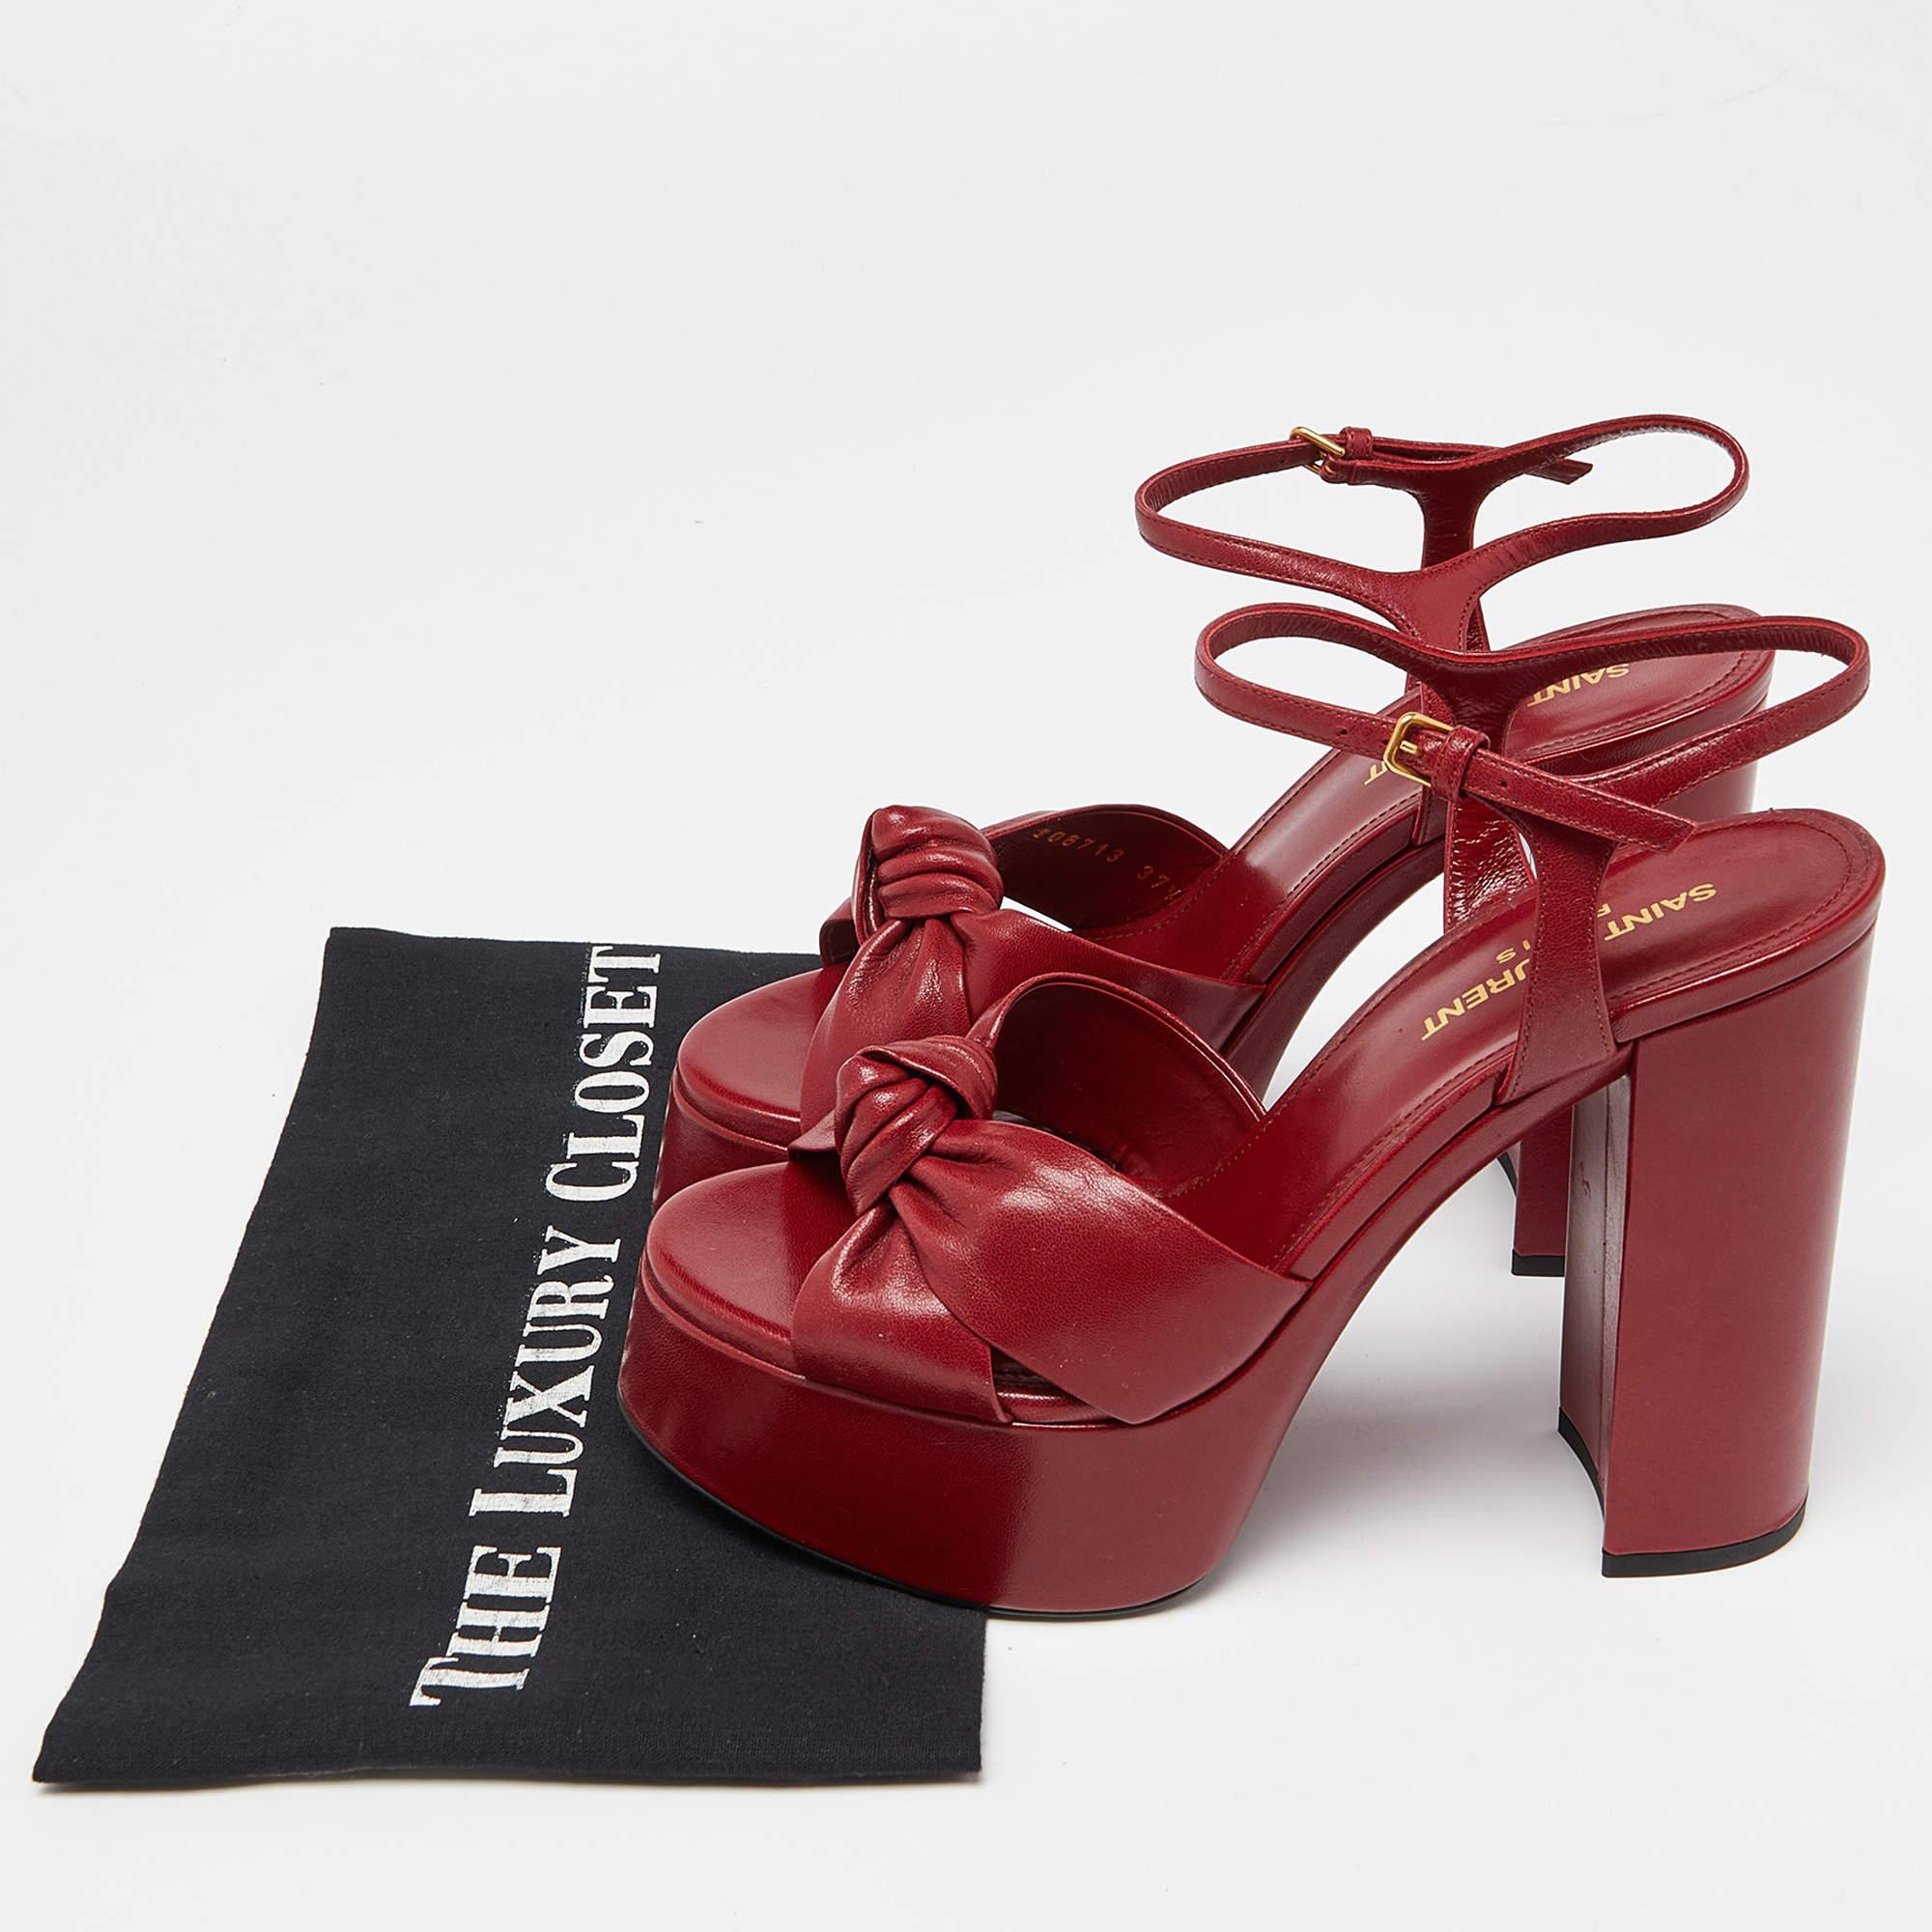 Saint Laurent Red Leather Bianca Sandals Size 37.5 5